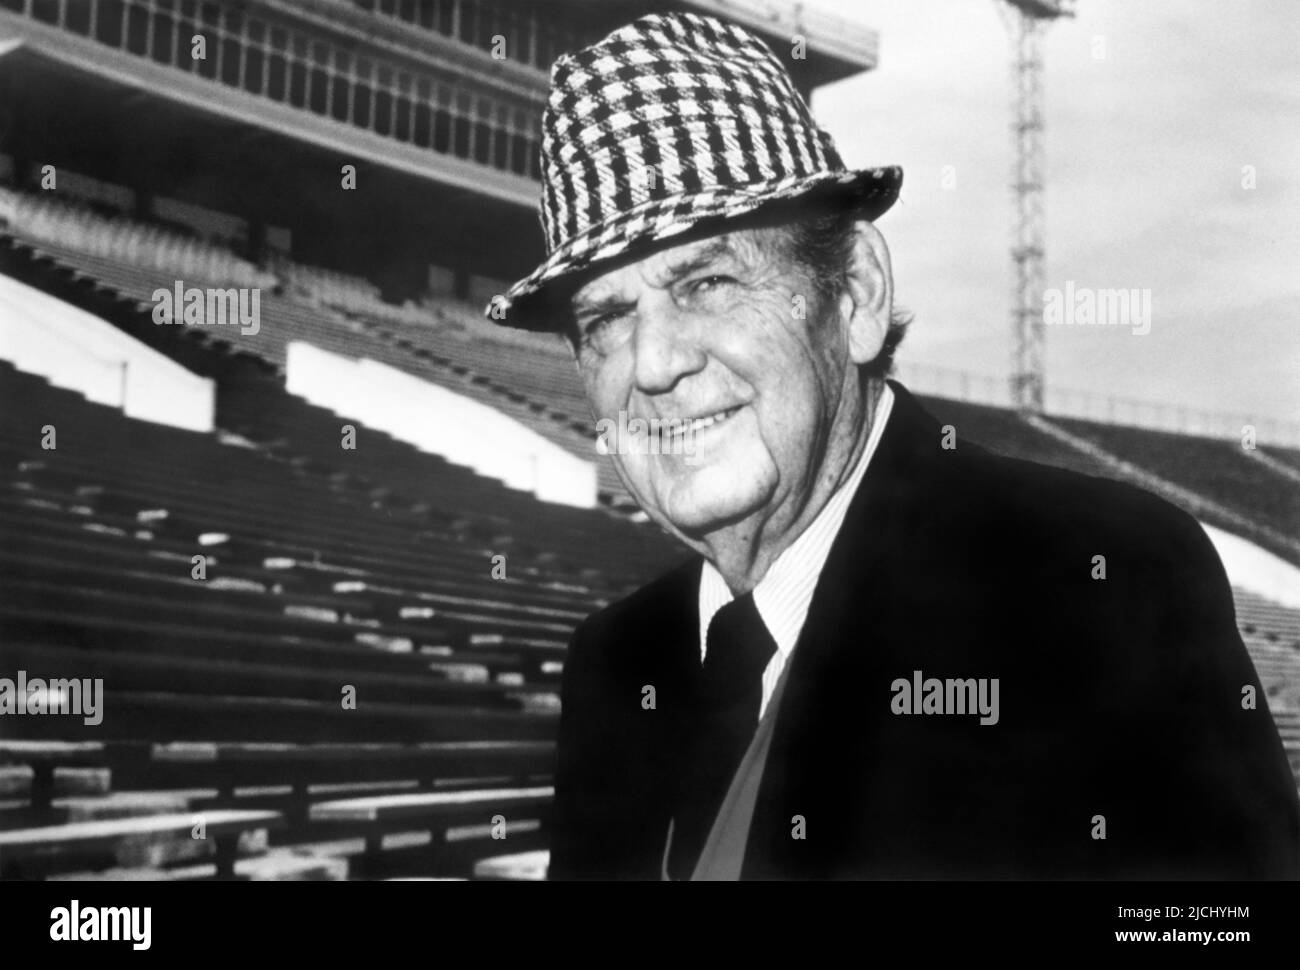 Paul William « Bear » Bryant, entraîneur de football universitaire légendaire (1913-1983), considéré par beaucoup comme le plus grand entraîneur de football universitaire de tous les temps, au stade Bryant-Denny de l'Université de l'Alabama à Tuscaloosa, Alabama. (ÉTATS-UNIS) Banque D'Images